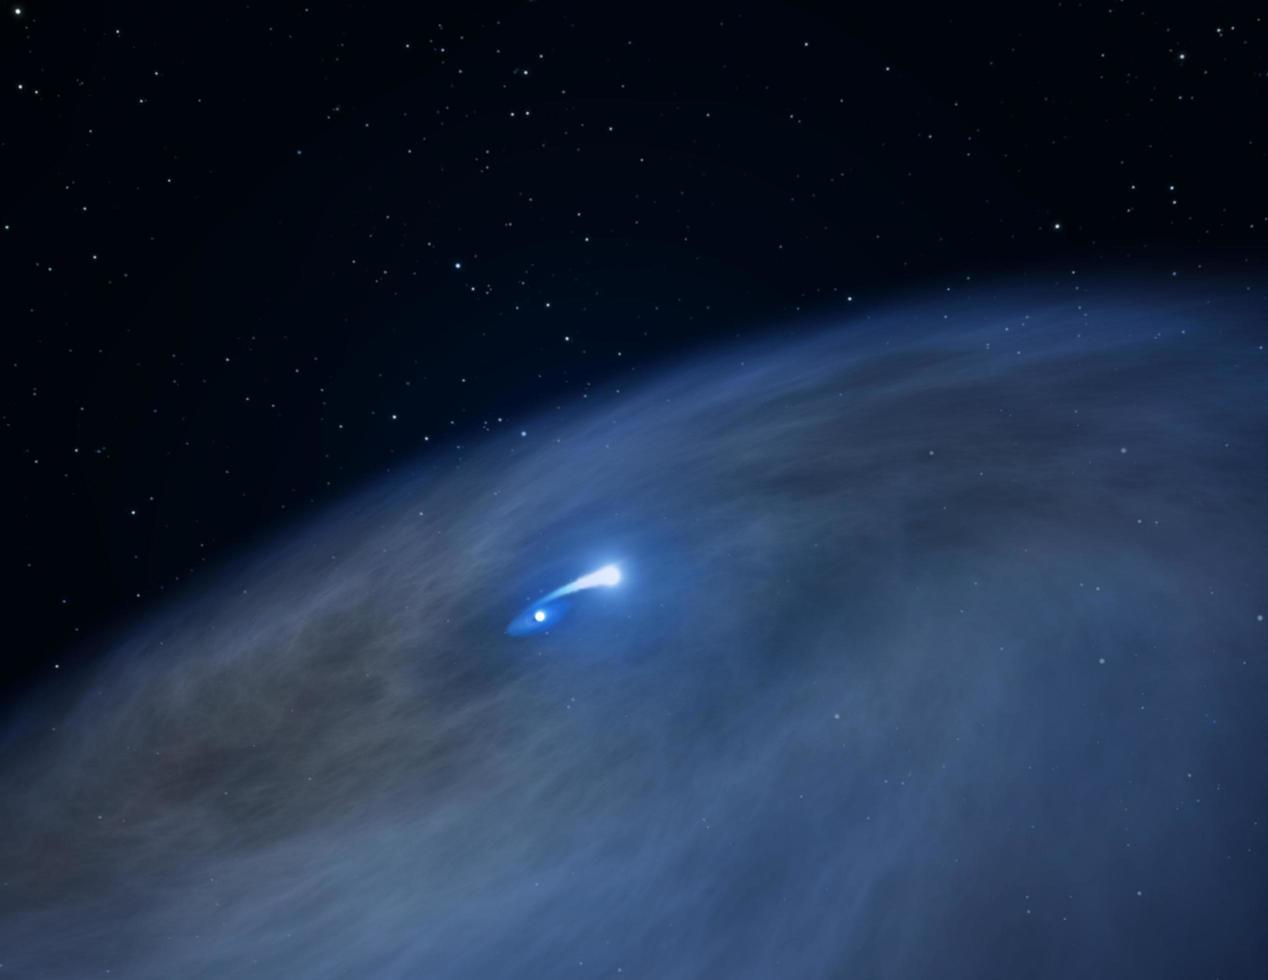 hubble beobachtet einen einzigartigen Star mit dem Spitznamen "fies" foto